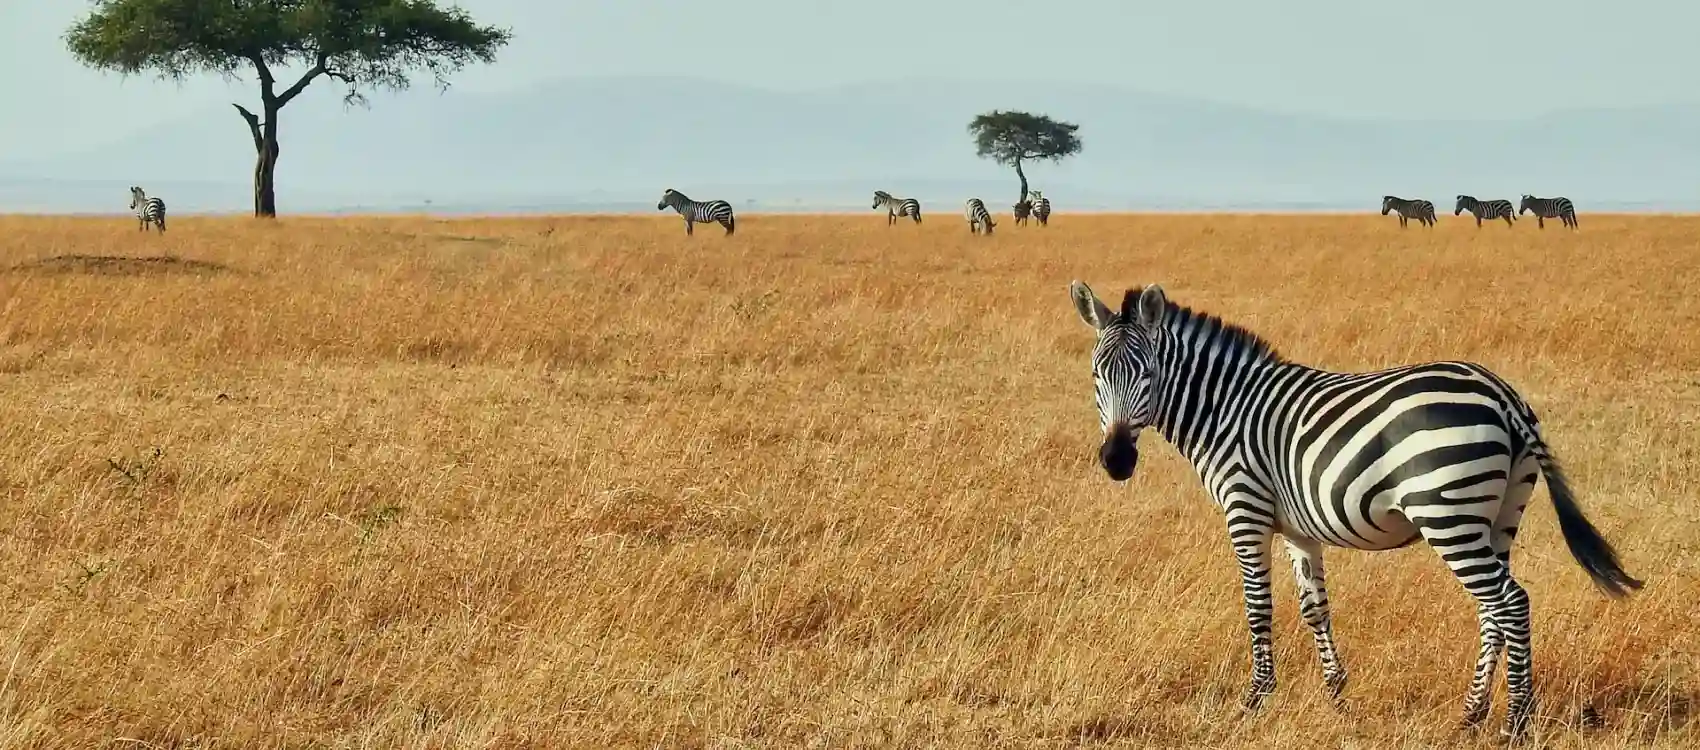 Zebras in the field